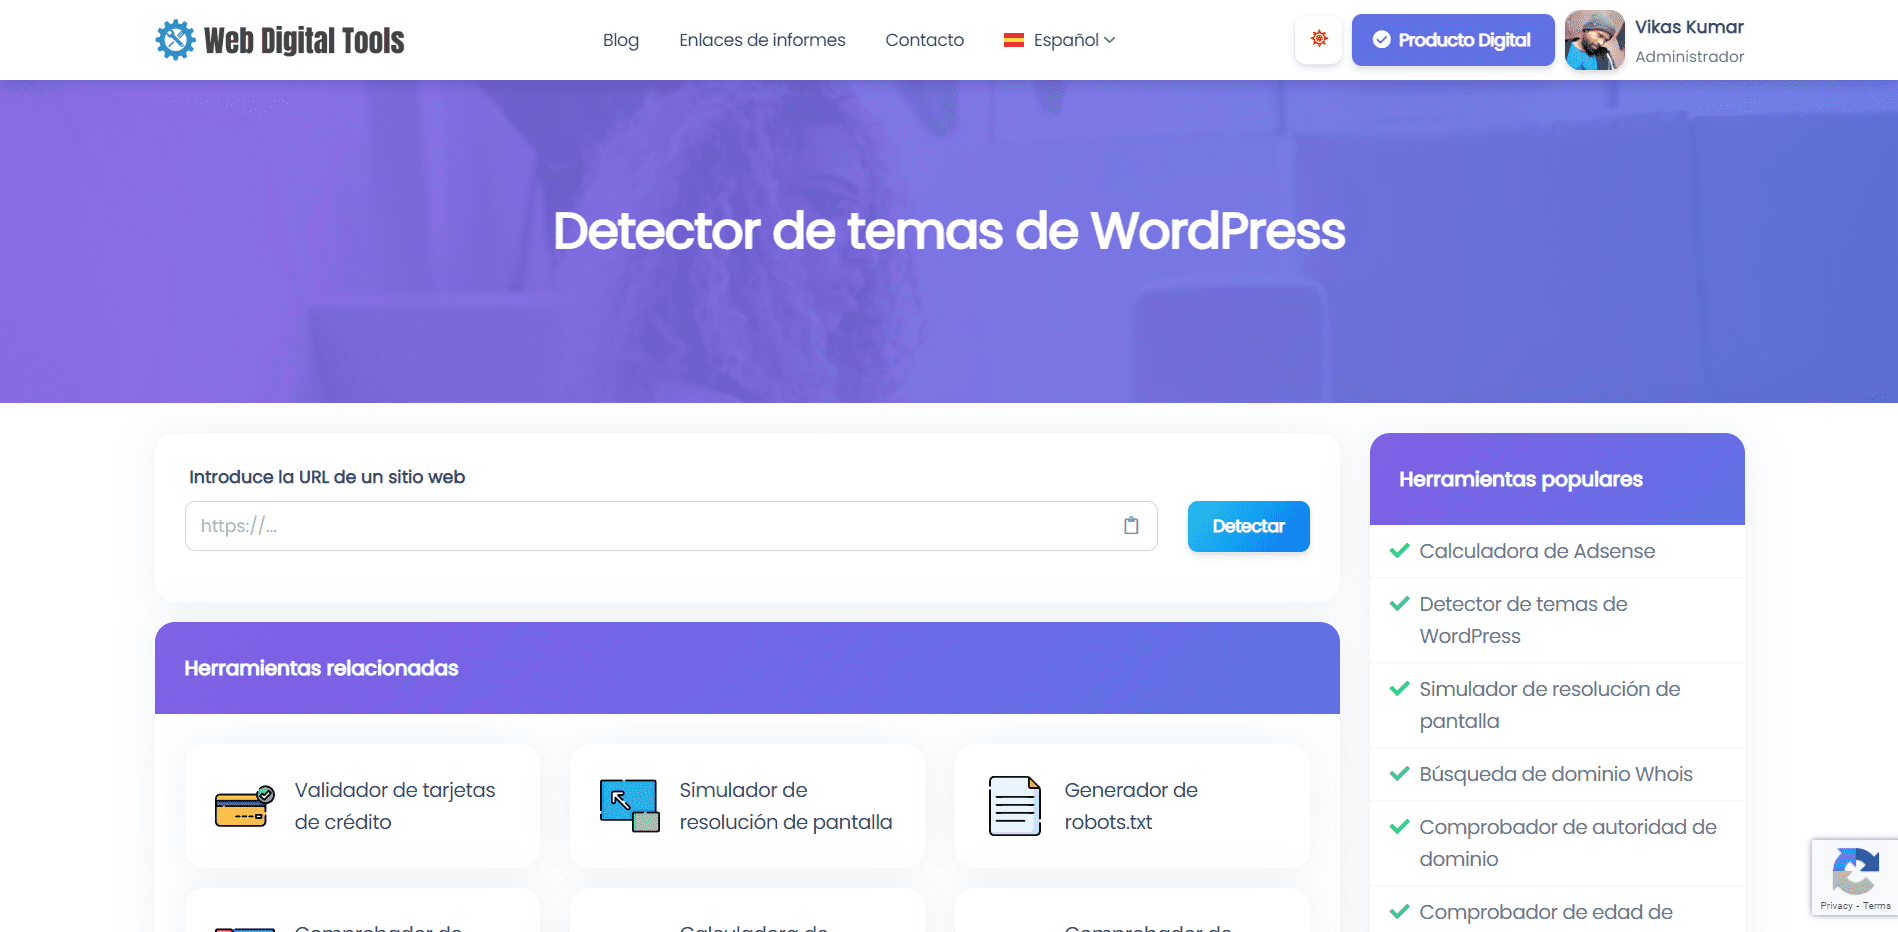 Detector de temas de WordPress